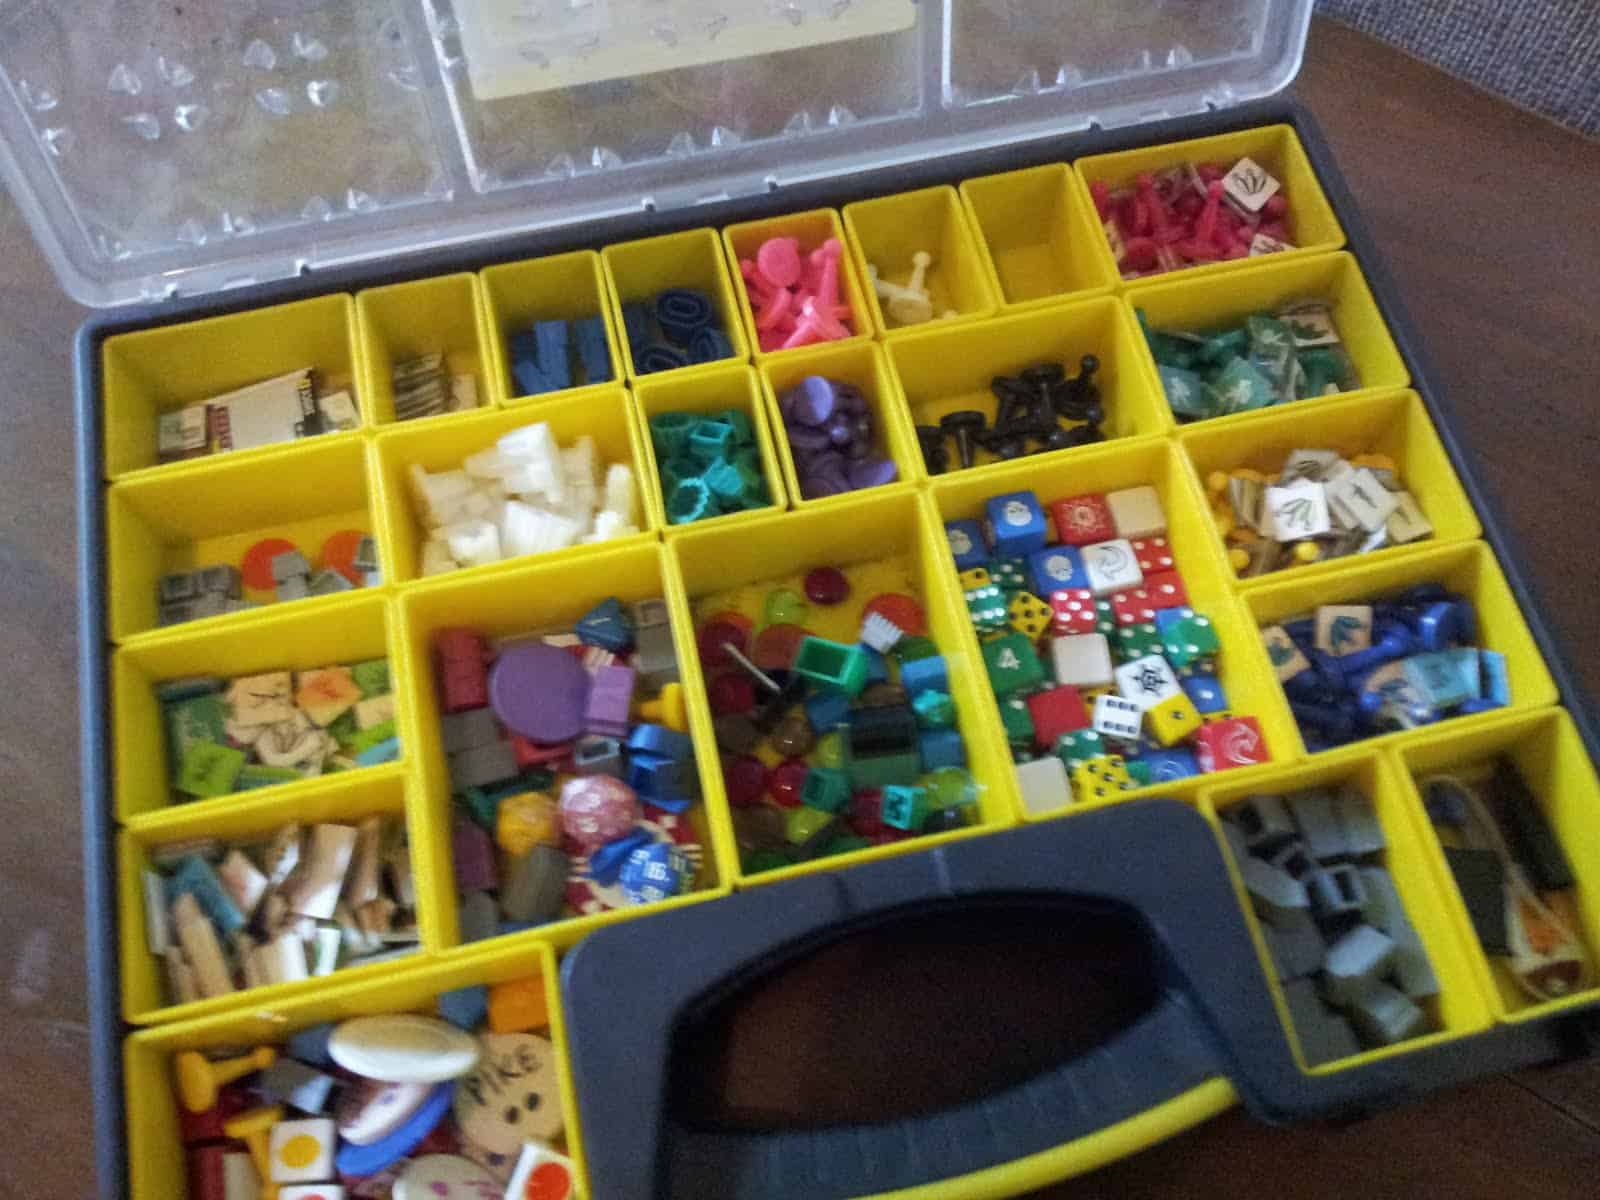 Random plastic game pieces